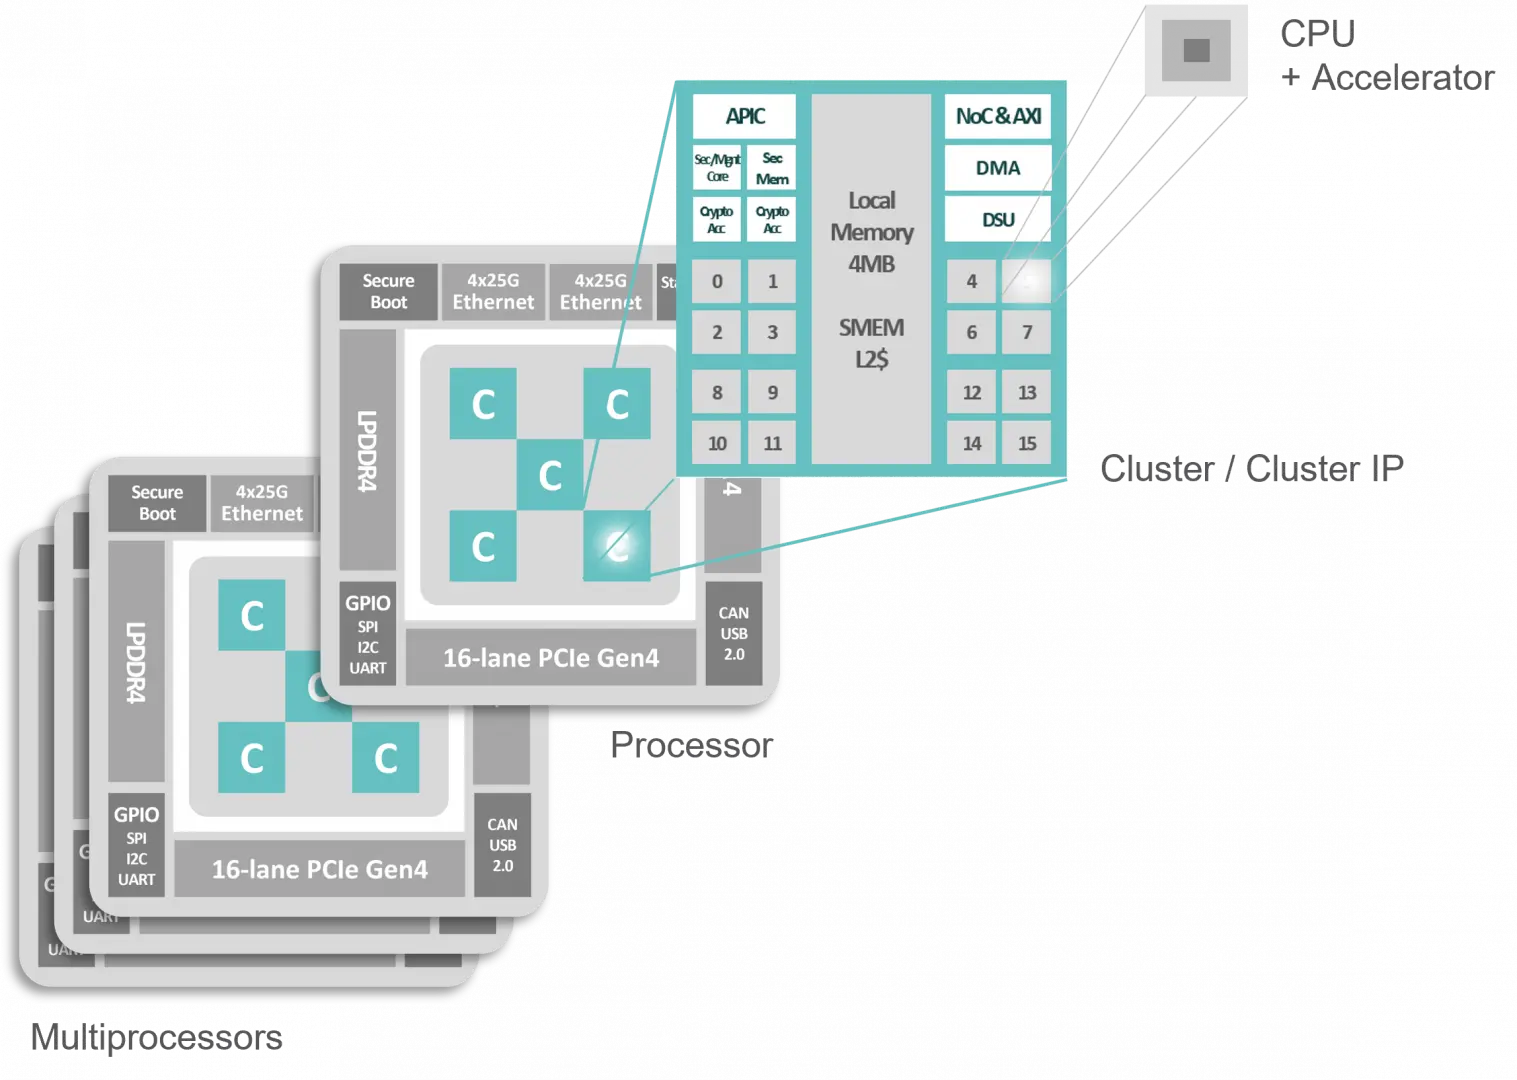 Kalray MPPA DPU architecture - Data Processing Unit - Scalability